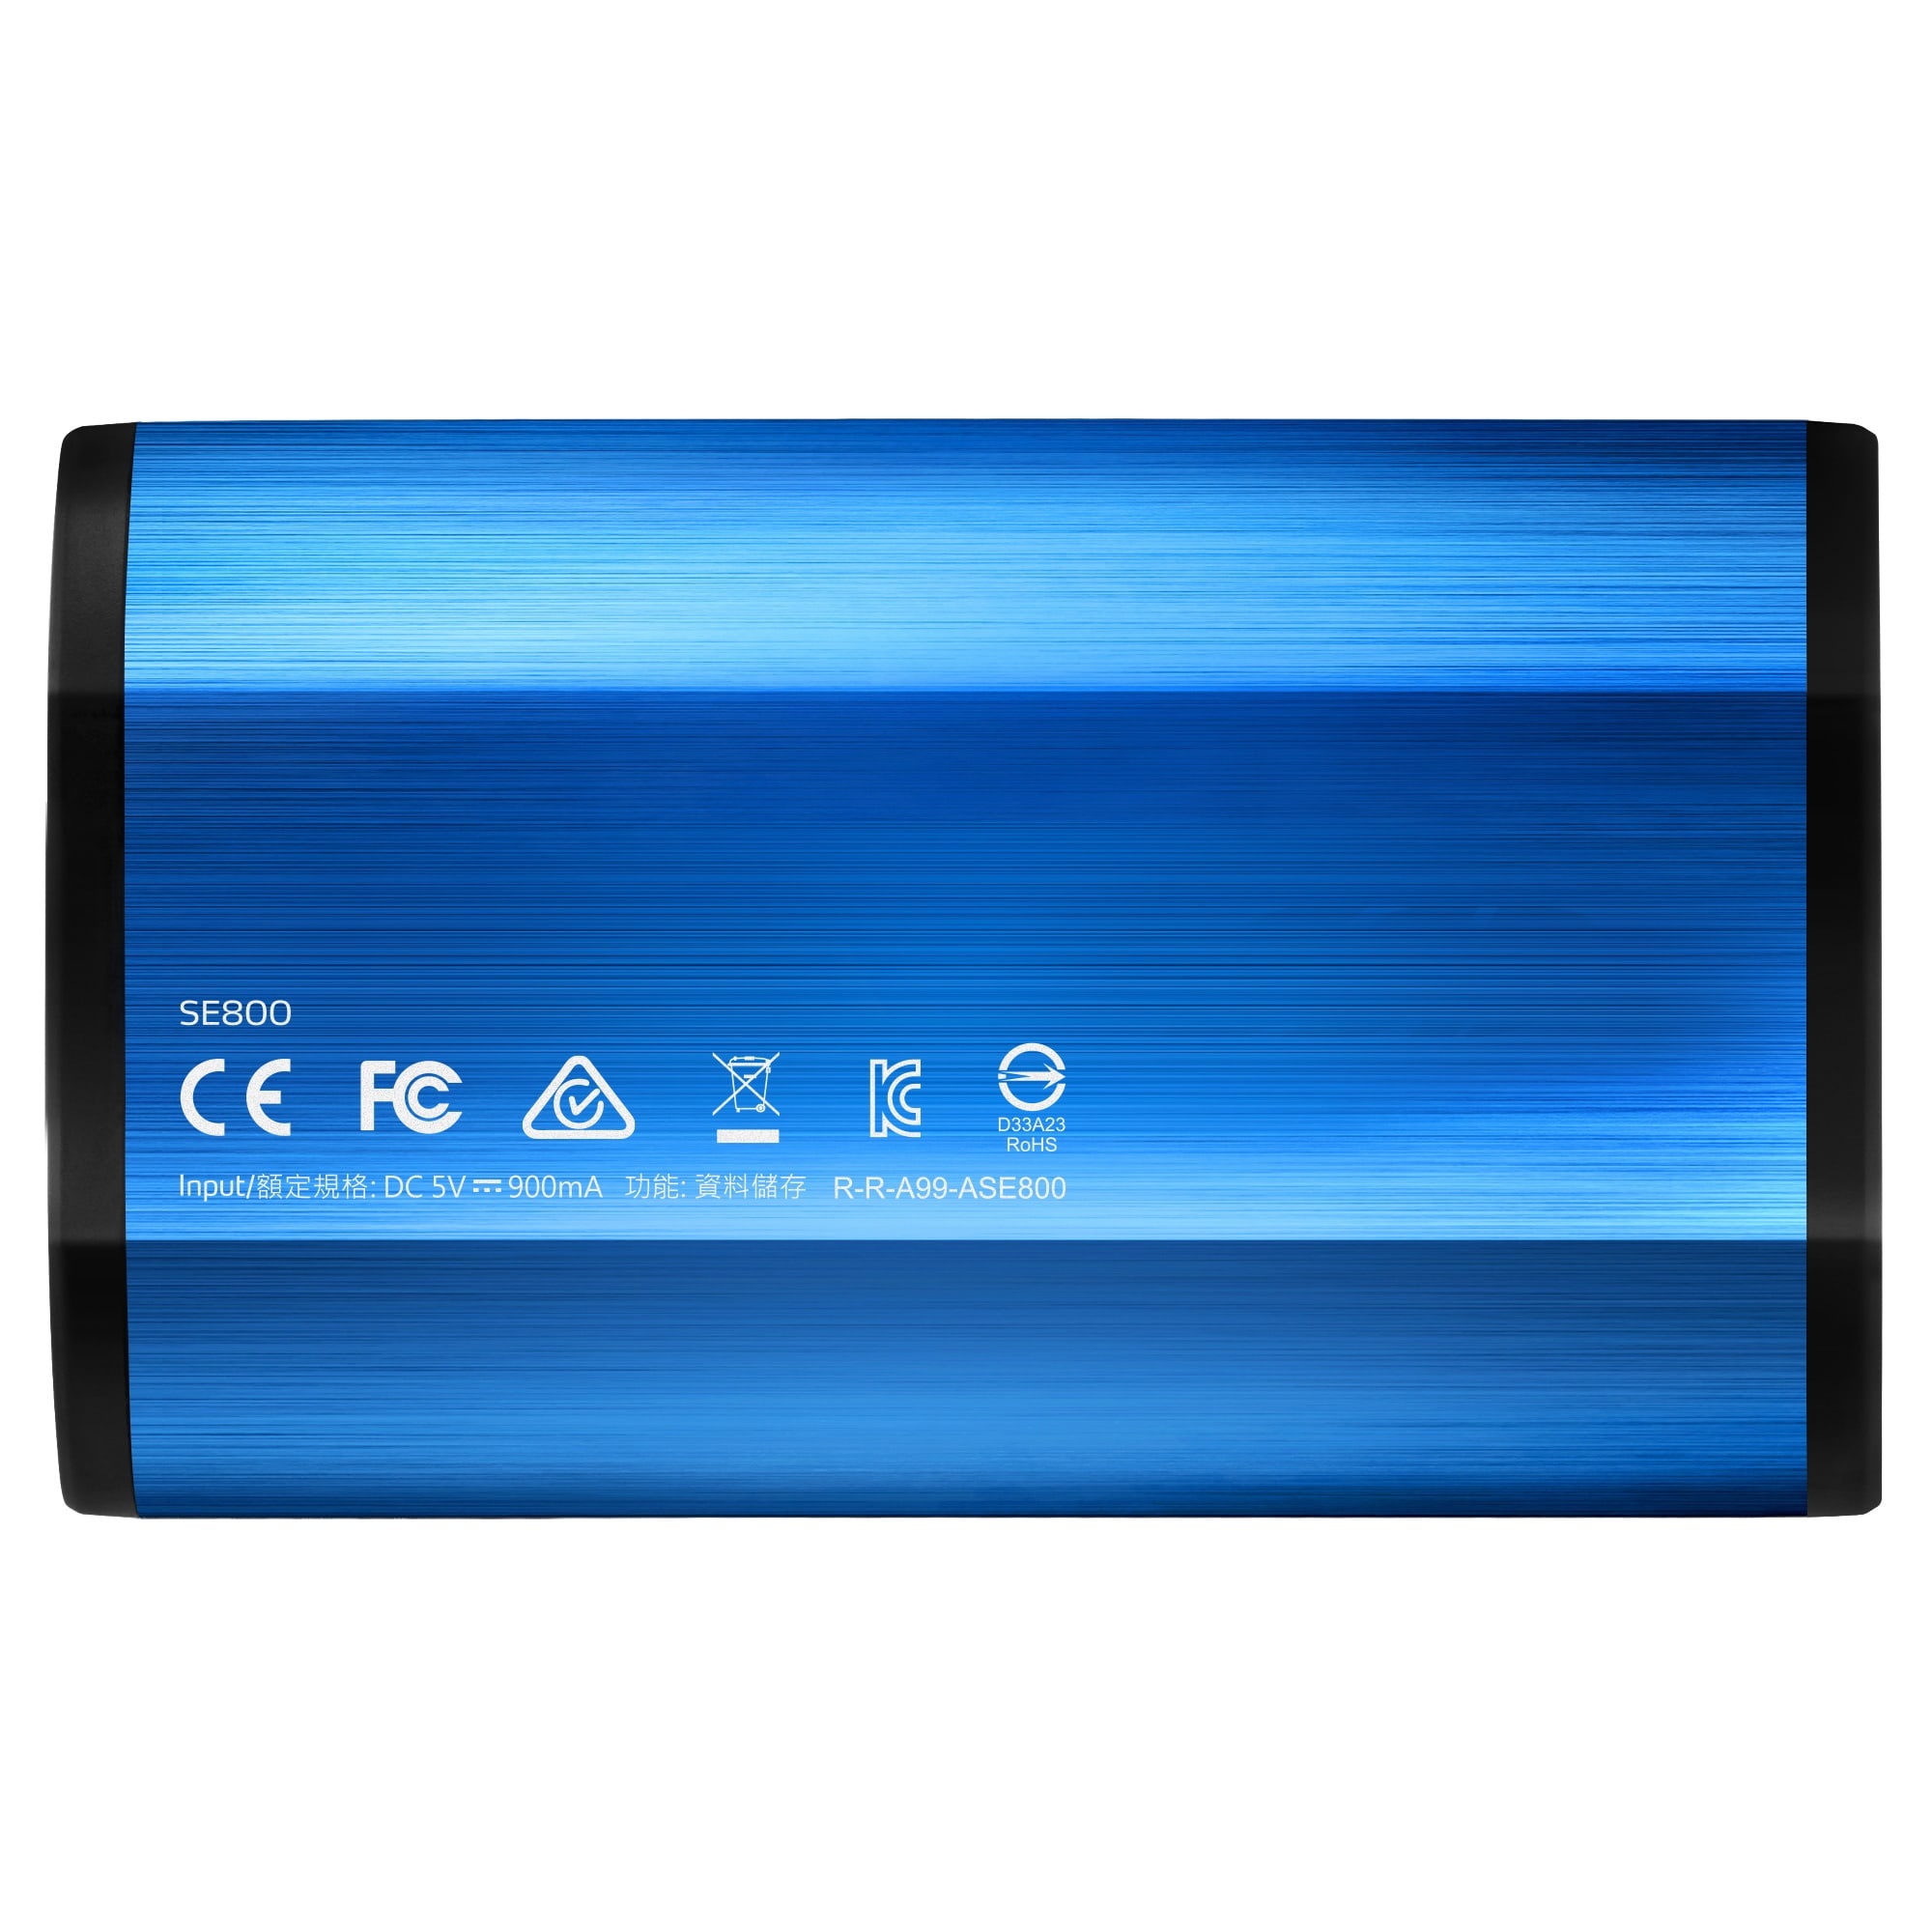 ADATA externí SSD SE800 512GB blue